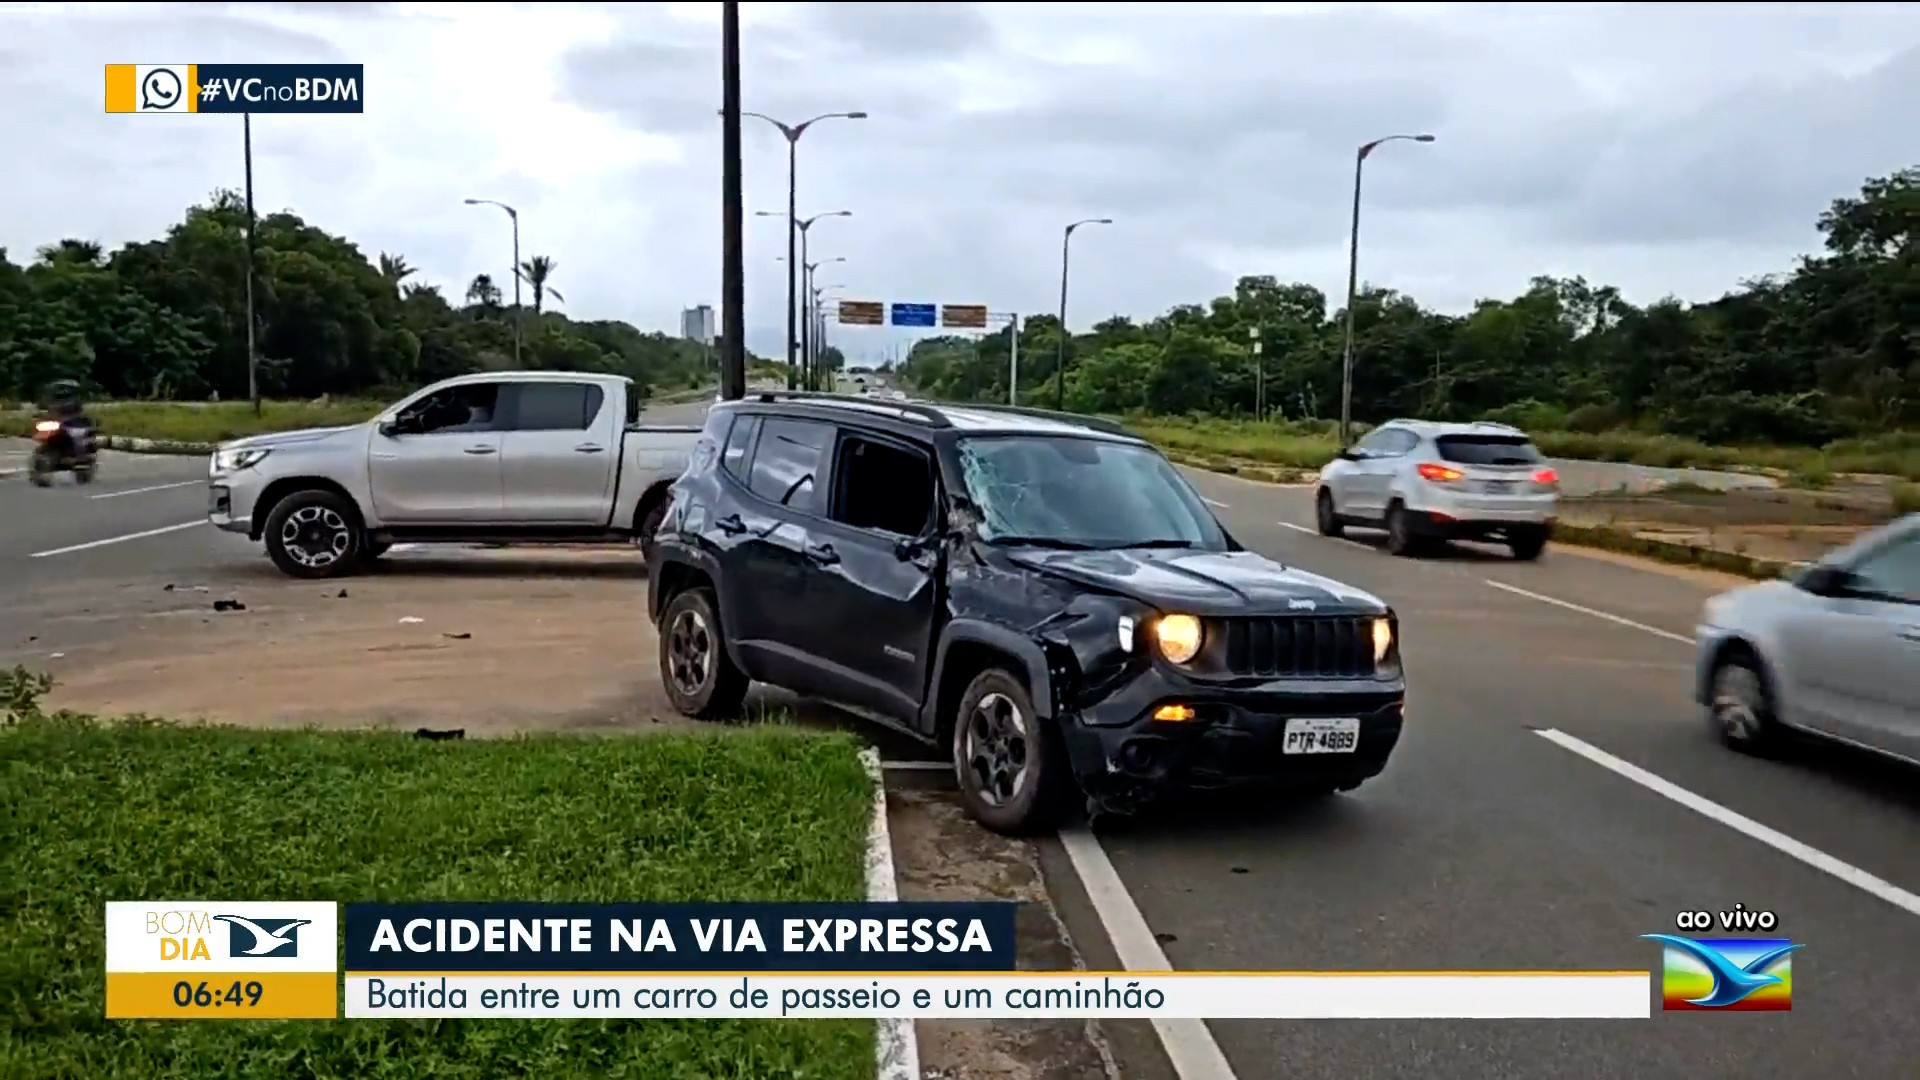 Acidente de trânsito é registrado na Via Expressa em São Luís